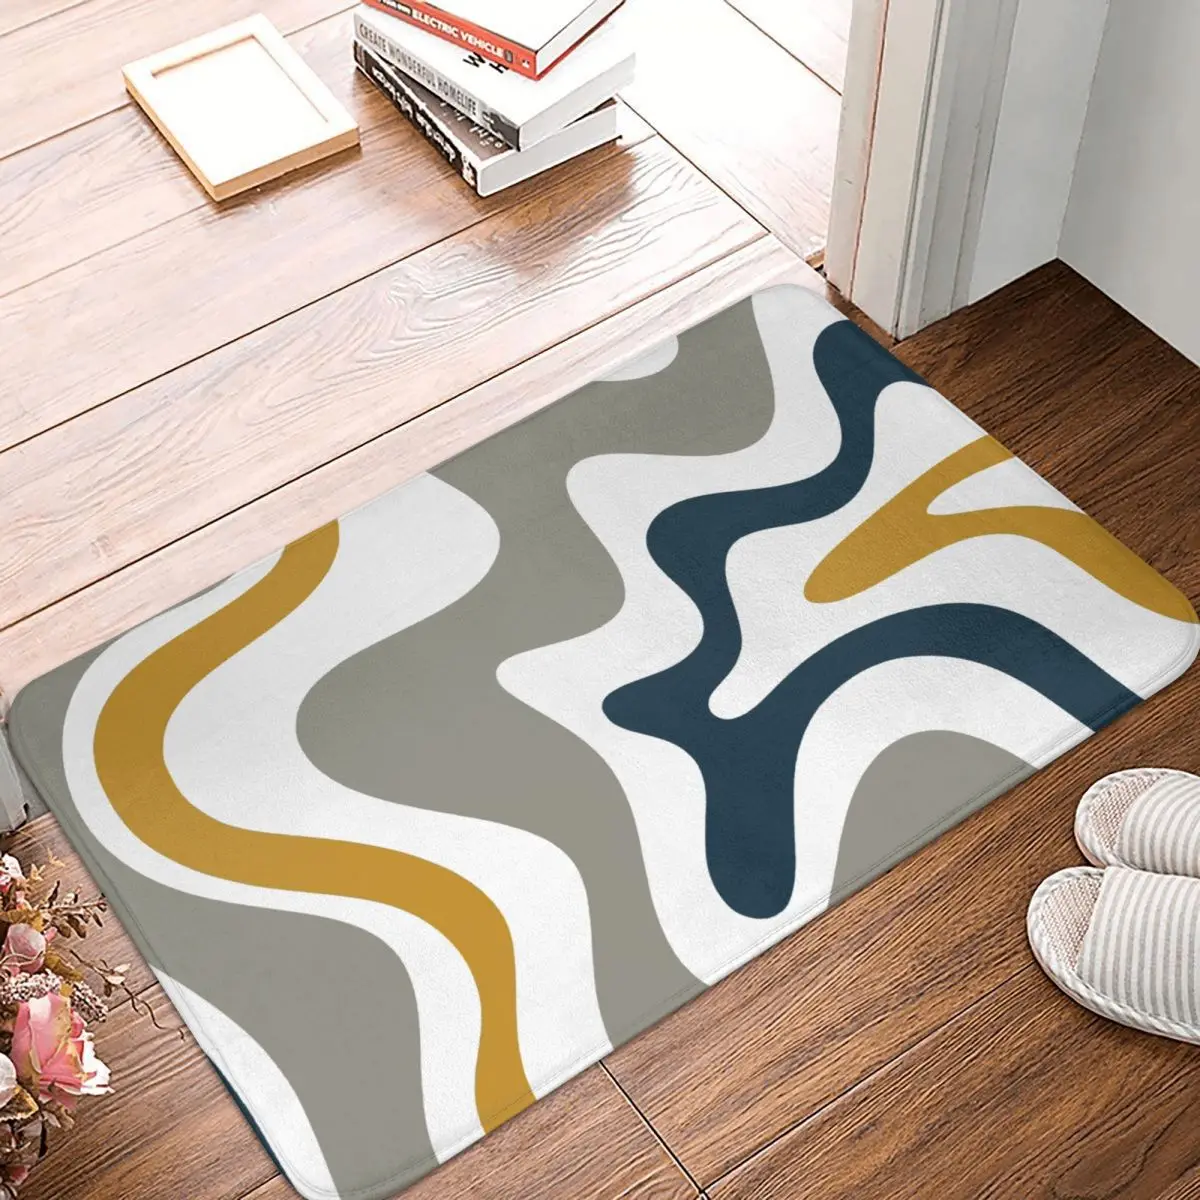 

Swirl Pattern Non-slip Doormat Liquid Contemporary Bath Kitchen Mat Outdoor Carpet Flannel Modern Decor